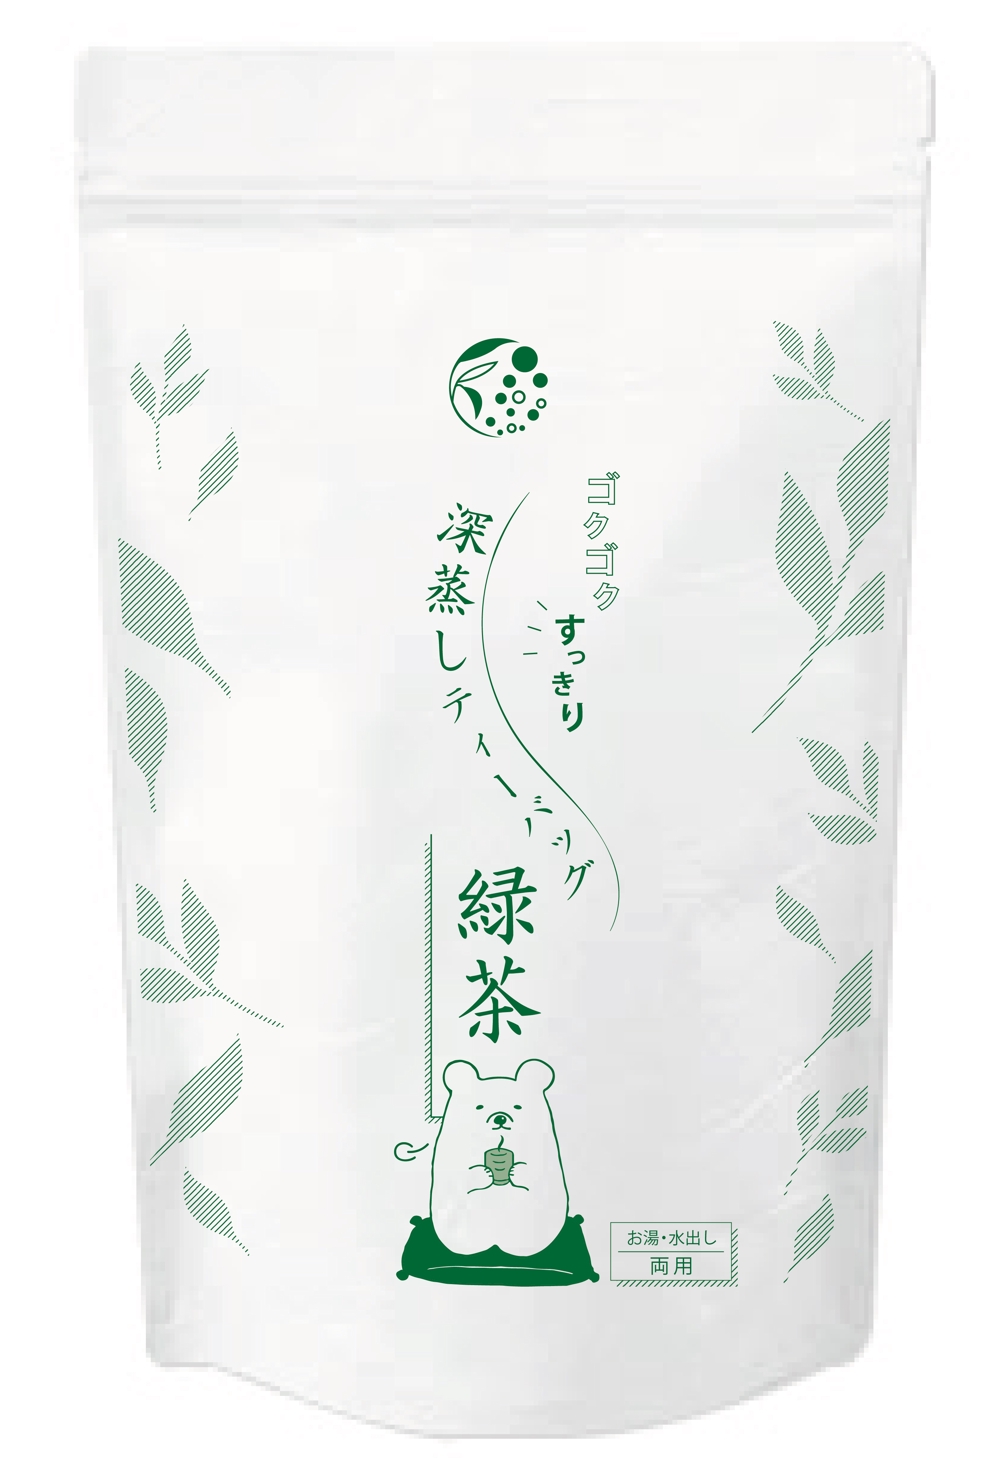 緑茶（チャック付スタンド袋の単色印字デザイン）